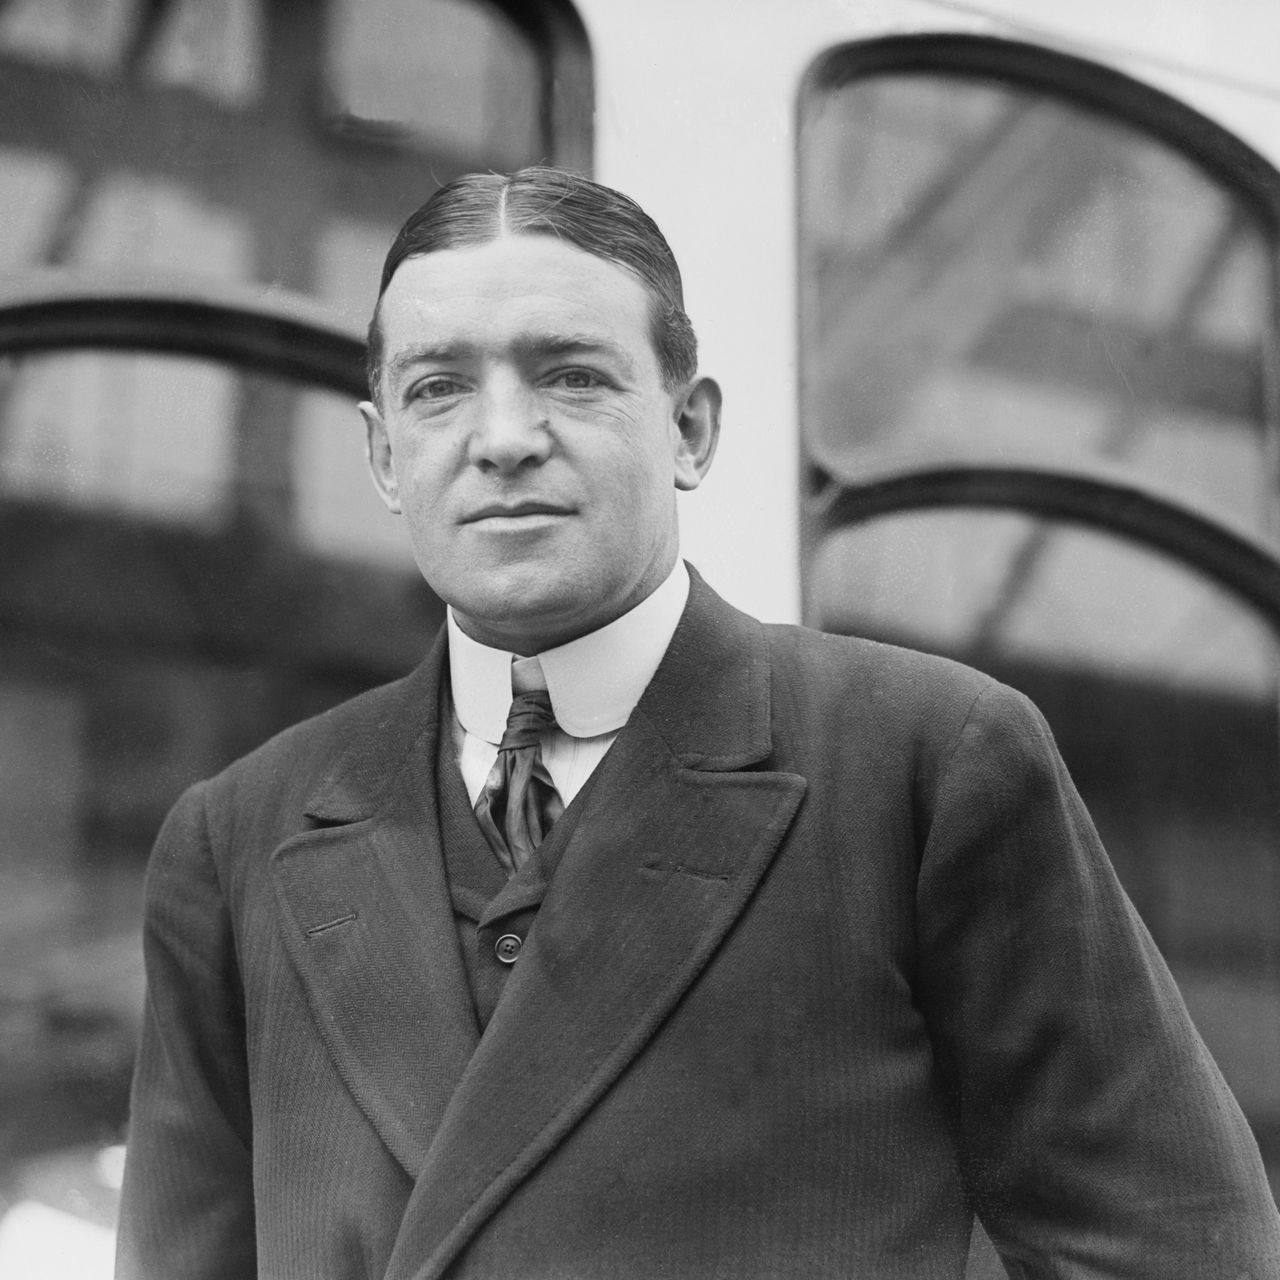 Nhà thám hiểm địa cực người Anh gốc Ireland Ernest Shackleton. Ảnh: CNN.